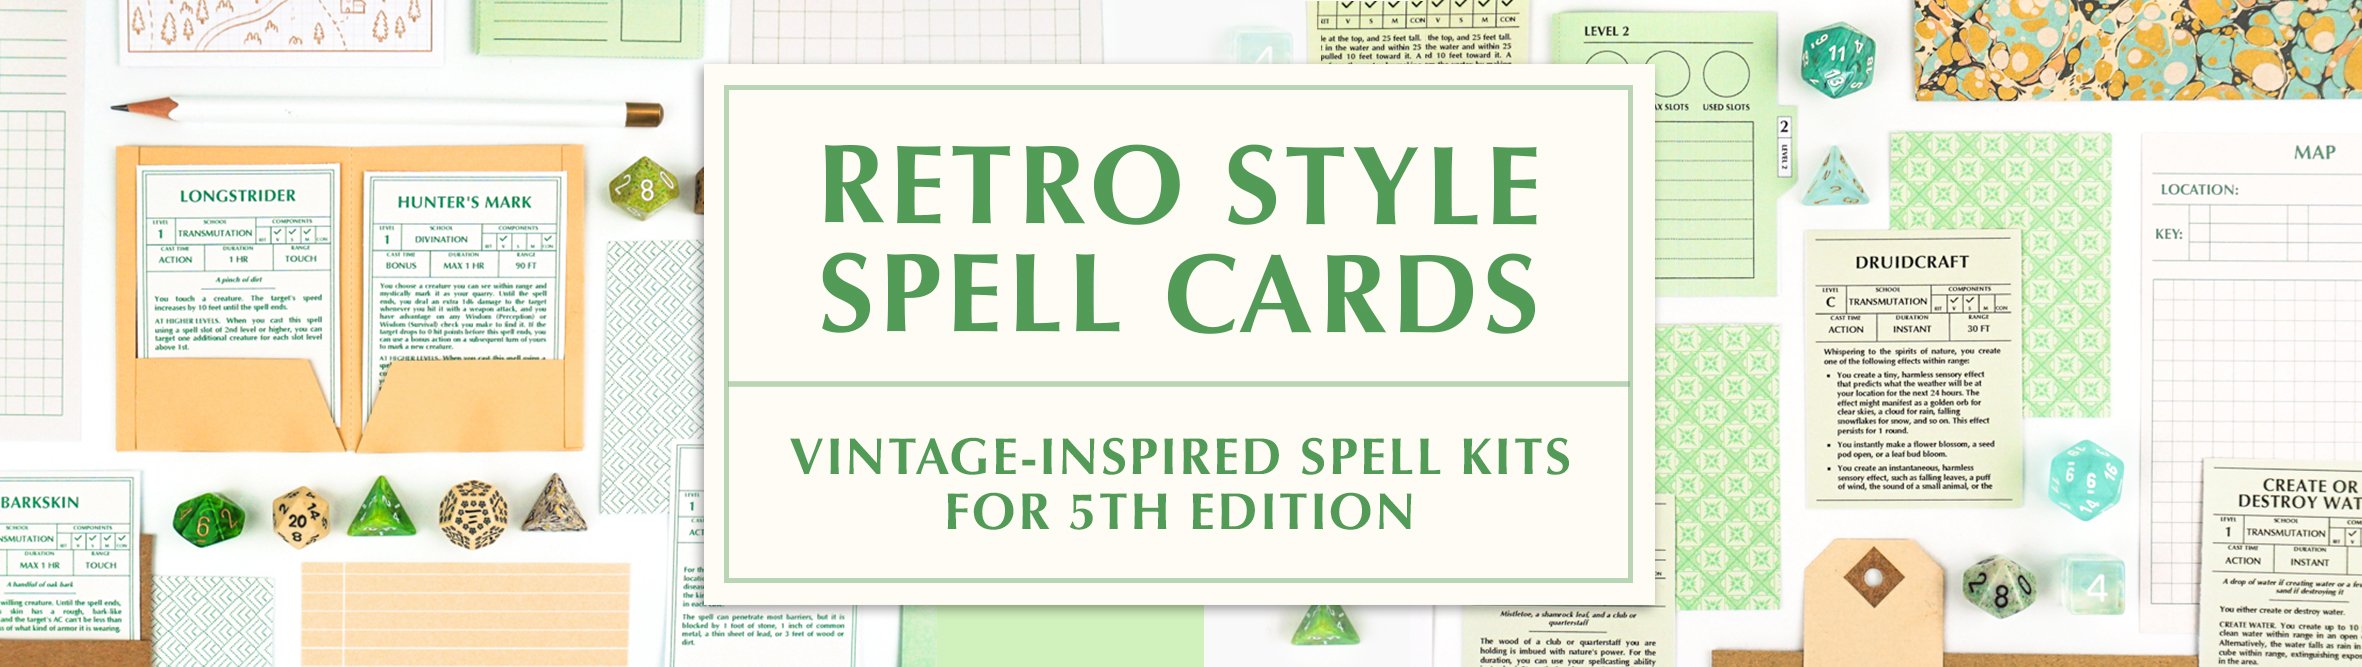 RETRO SPELL CARDS 2.jpg